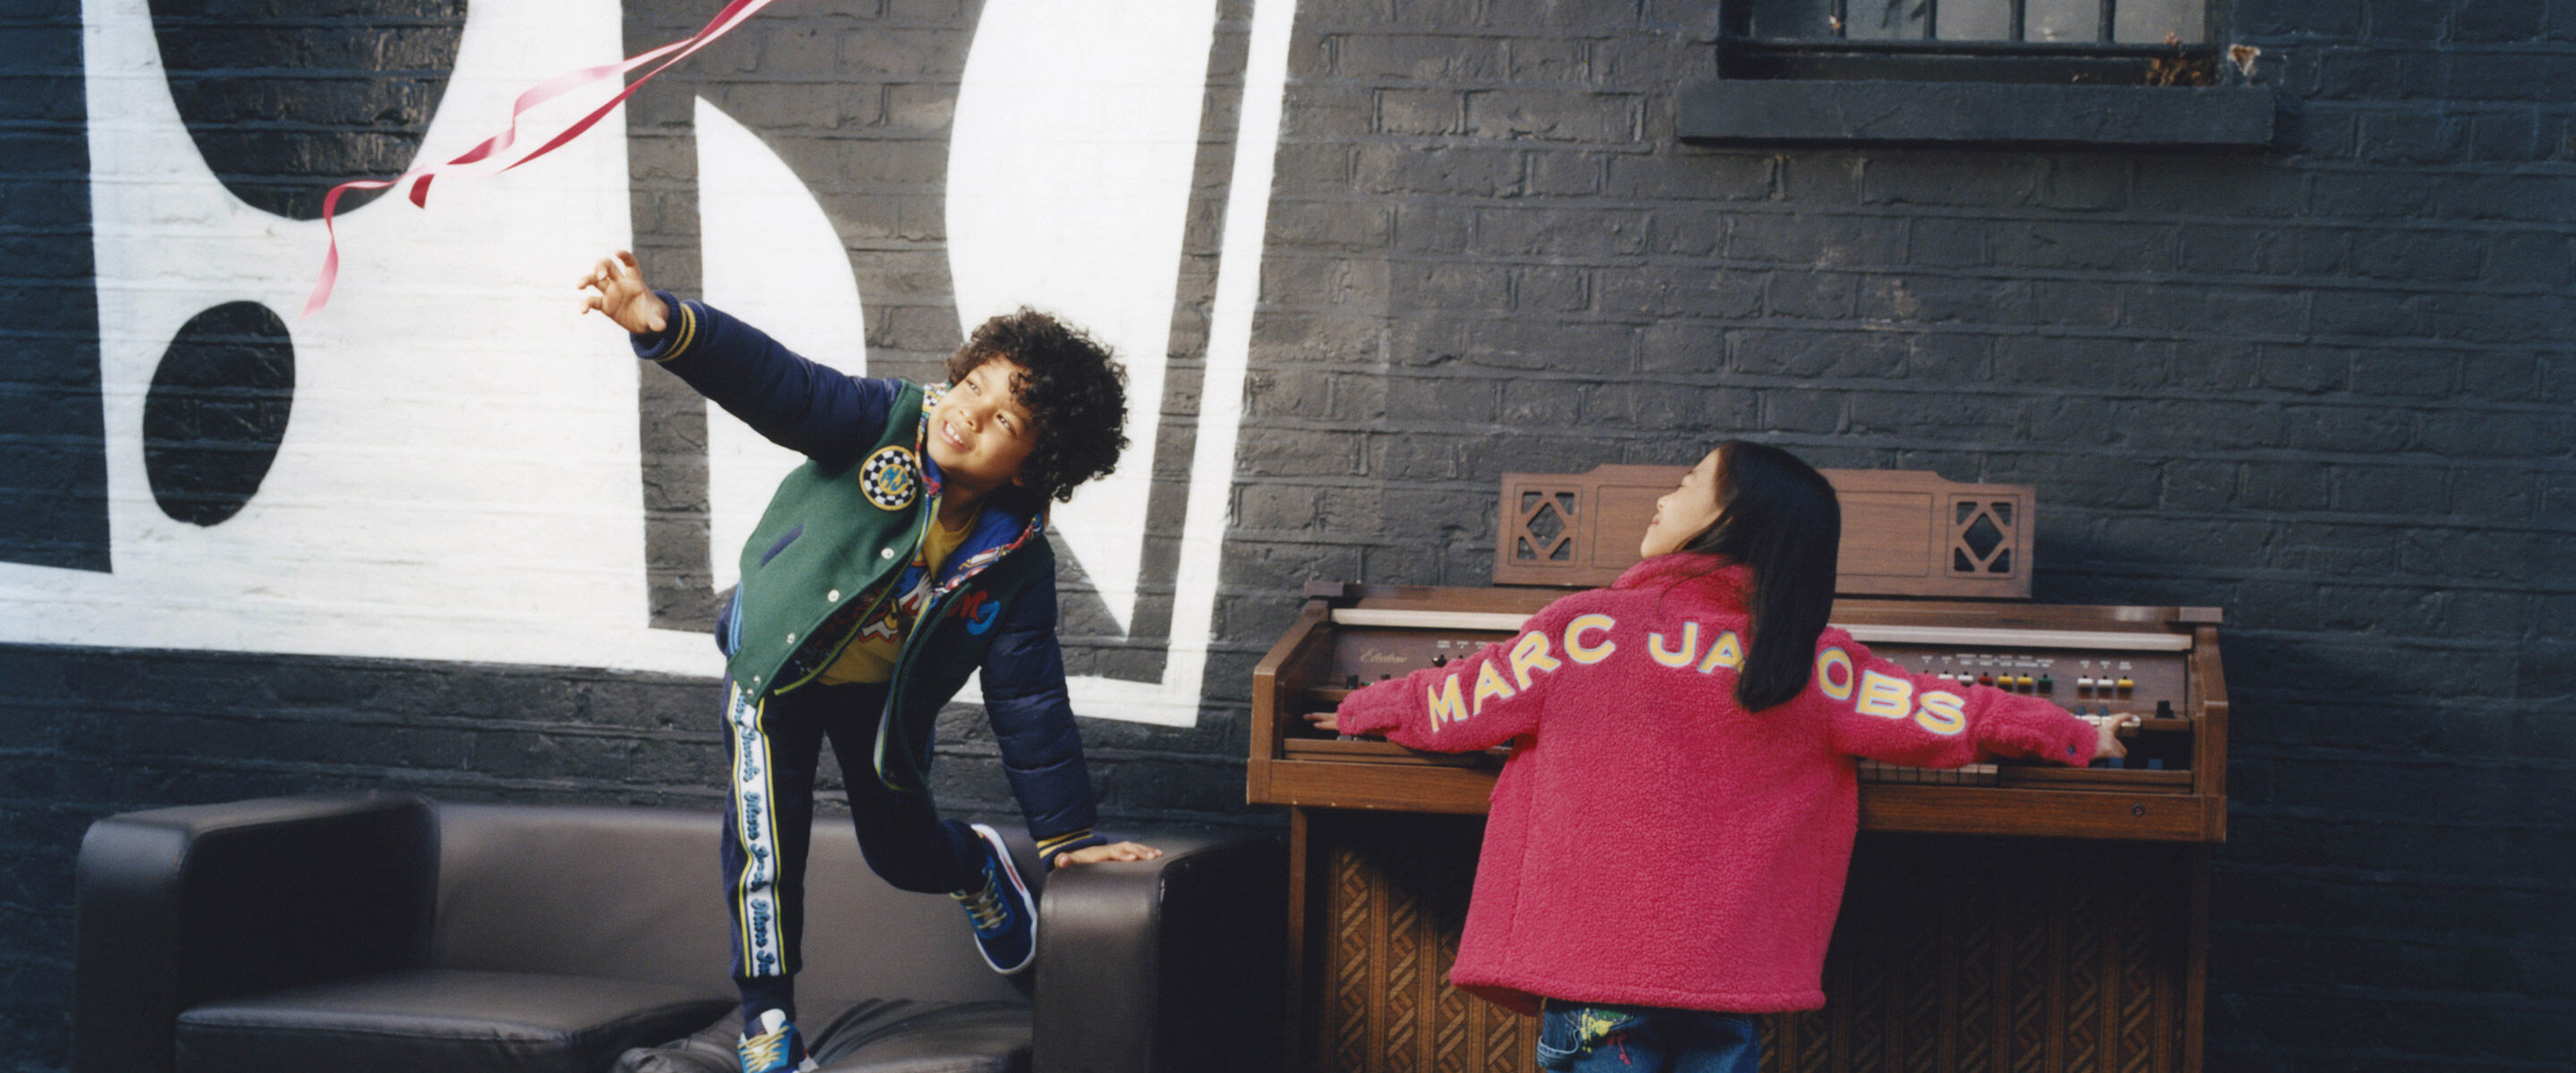 Leopard Printed Shoulder Bag in Multicoloured - Marc Jacobs Kids